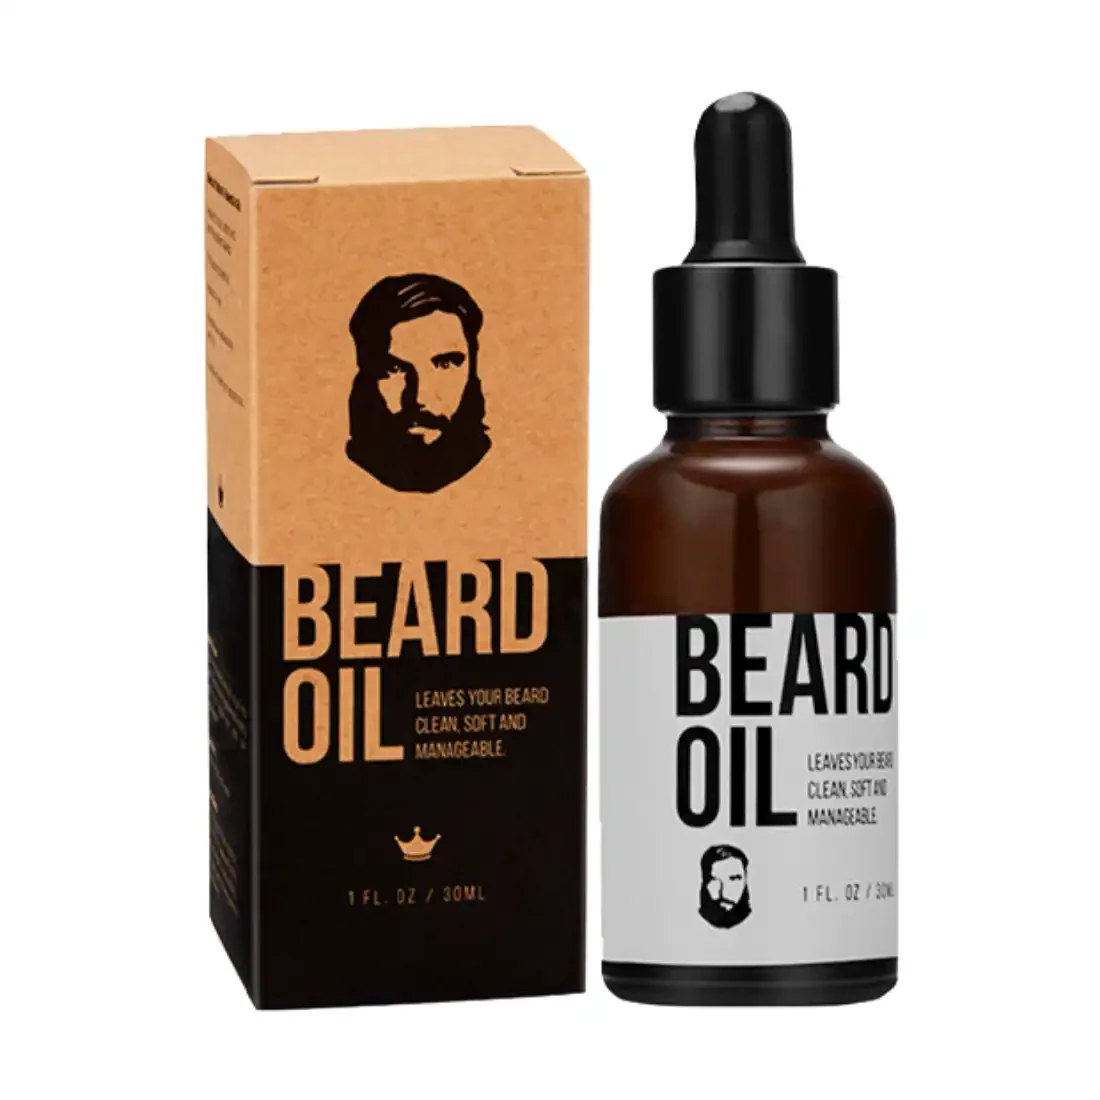 custom-hemp-beard-oil-boxes